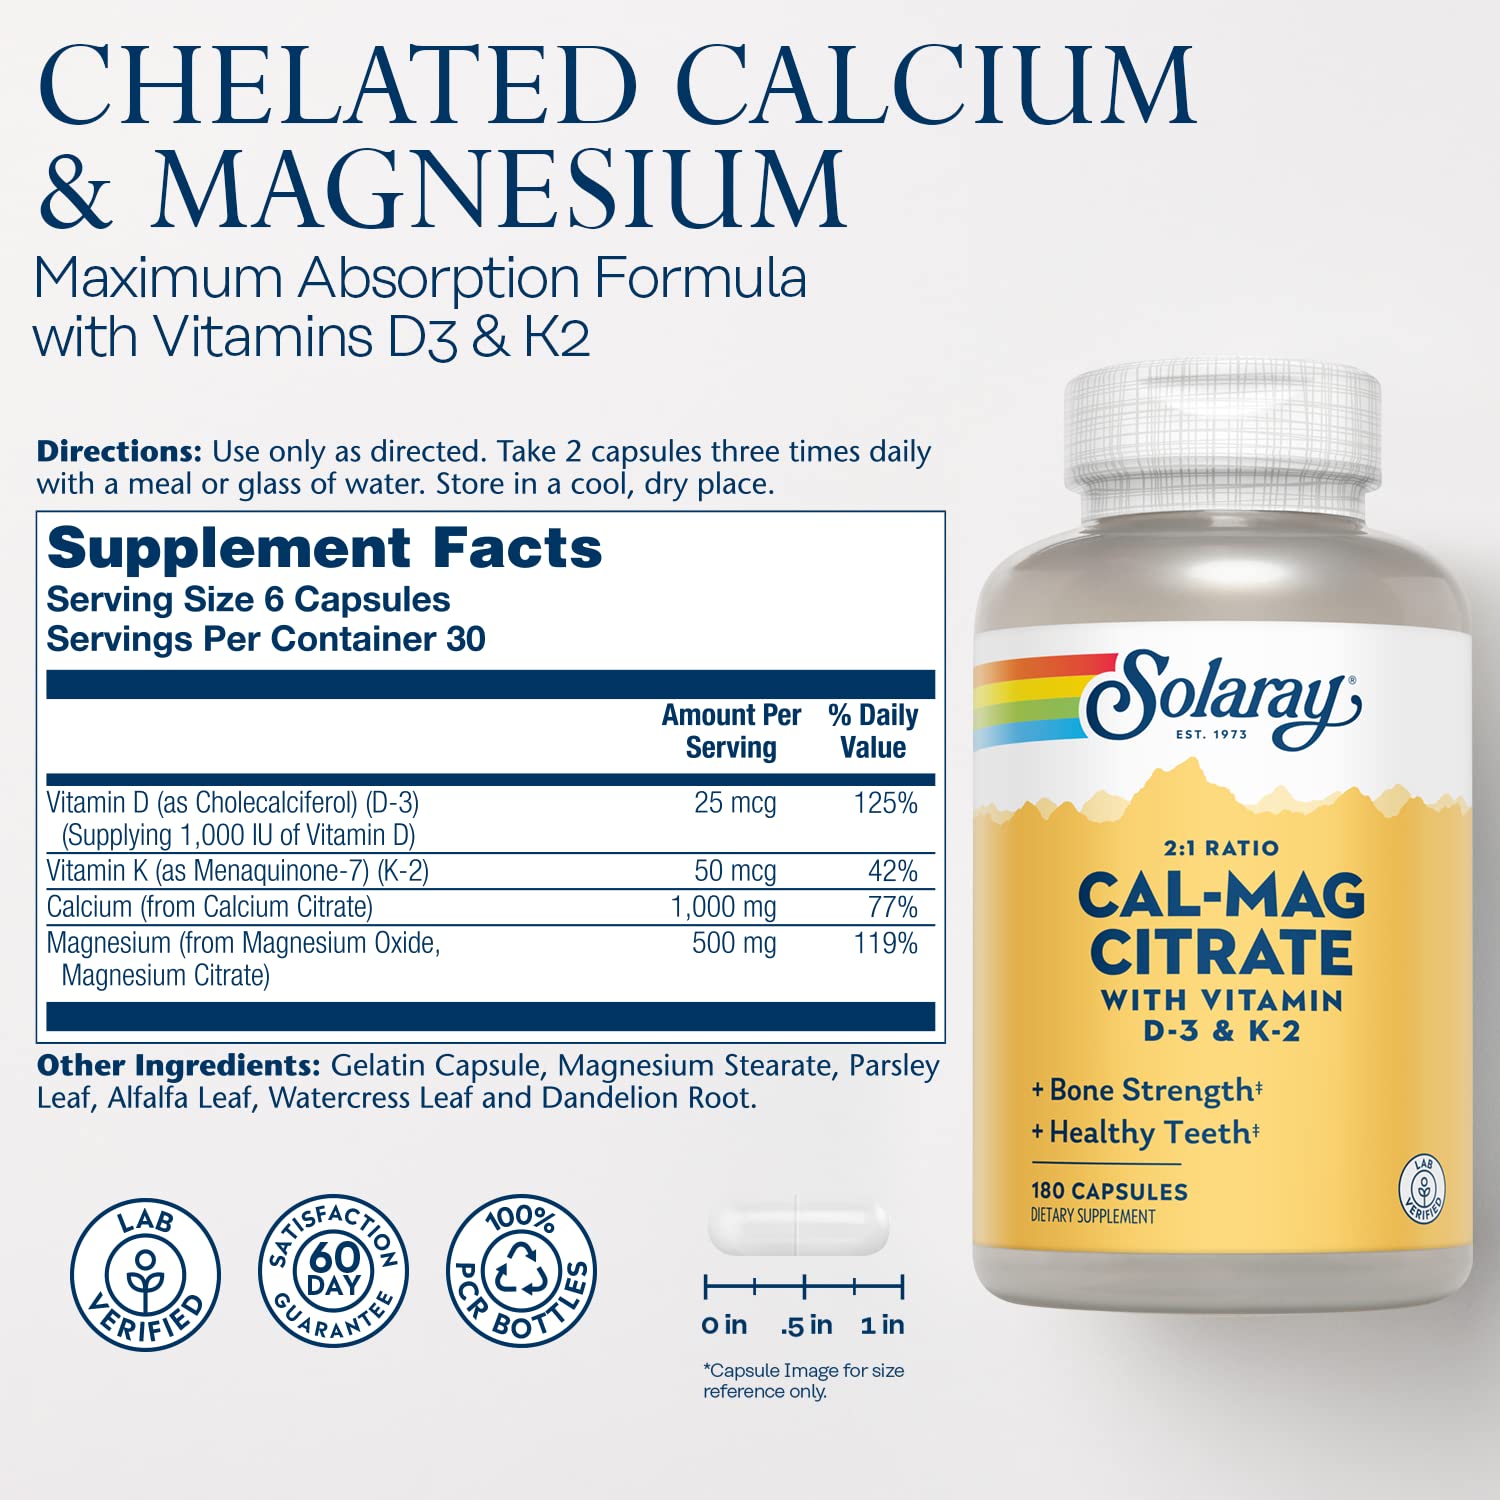 Solaray Calcium & Magnesium Citrate with Vitamins D-3 & K-2 2:1 Ratio 180ct Capsule